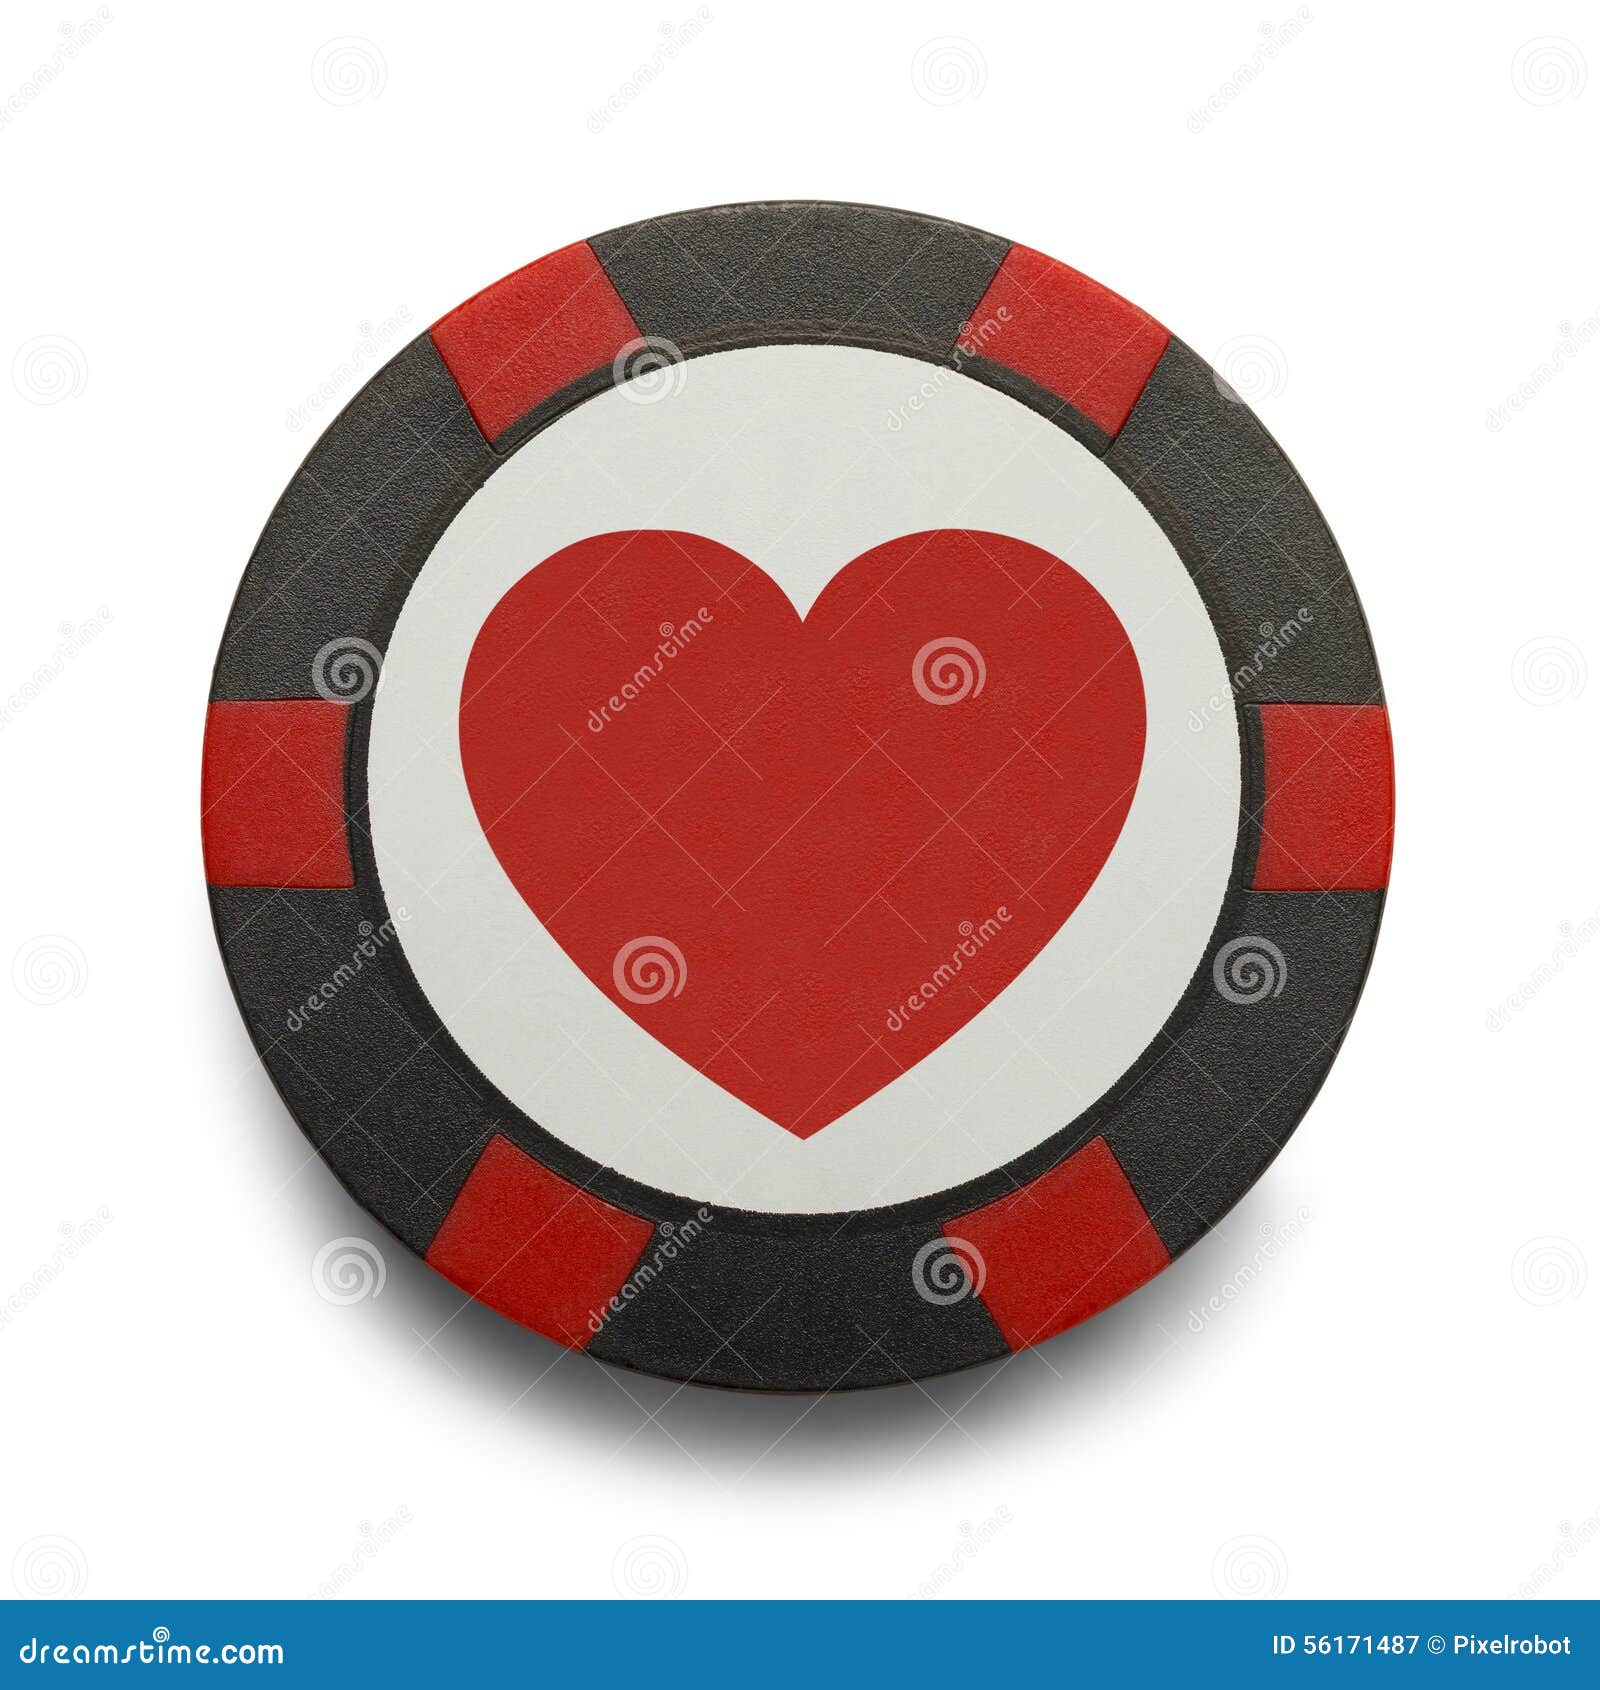 heart poker chip